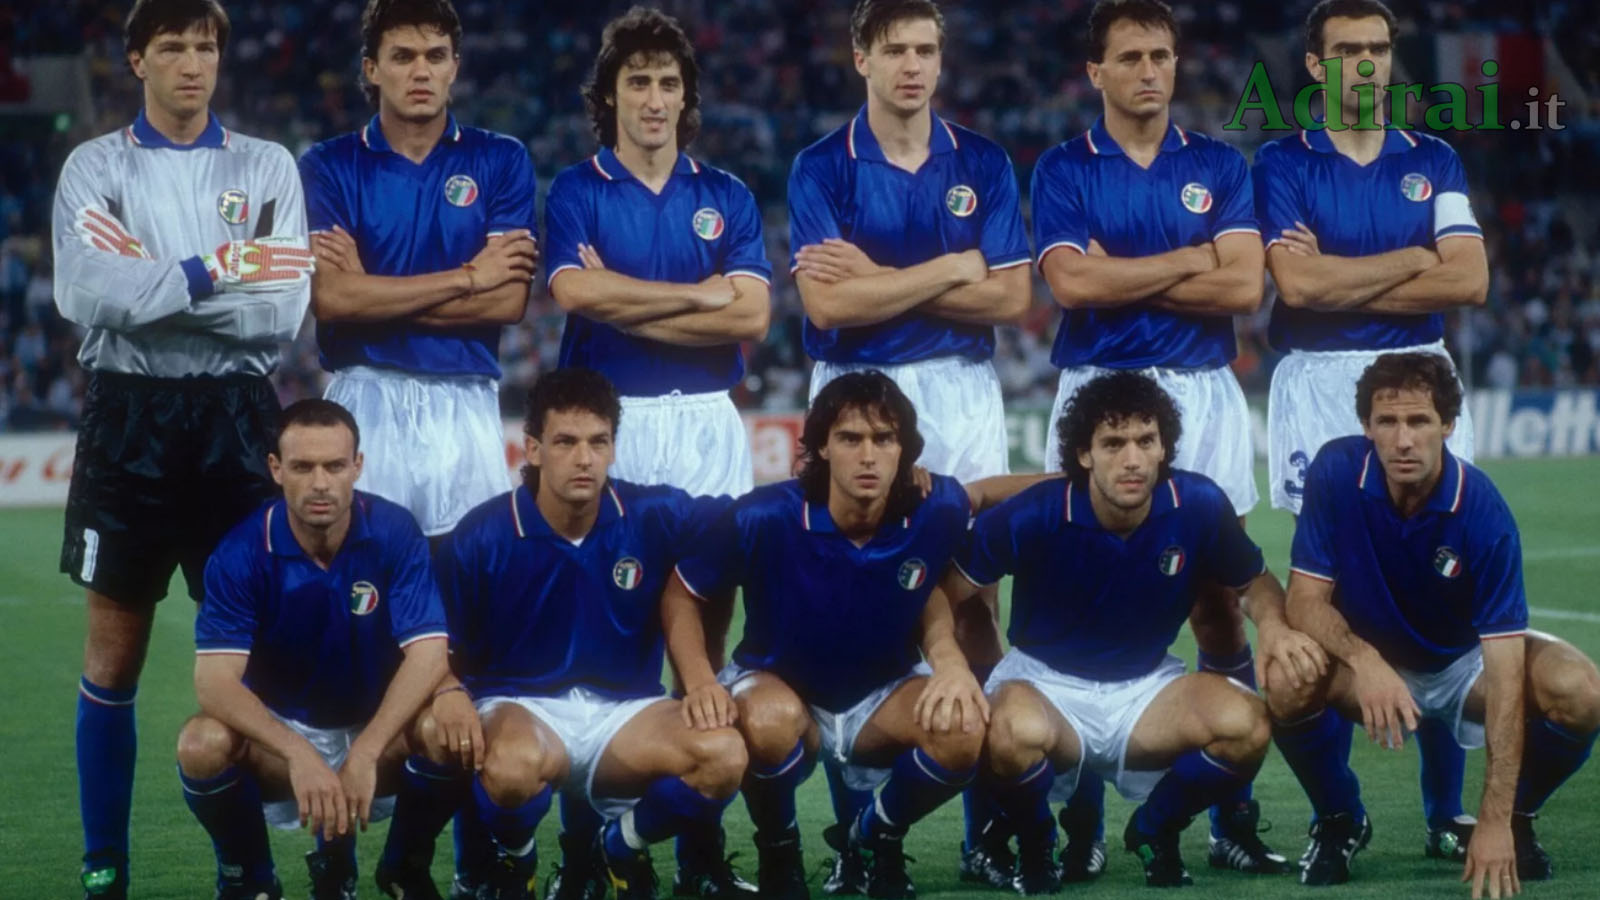 mondiali calcio italia 1990 nazionale italiana